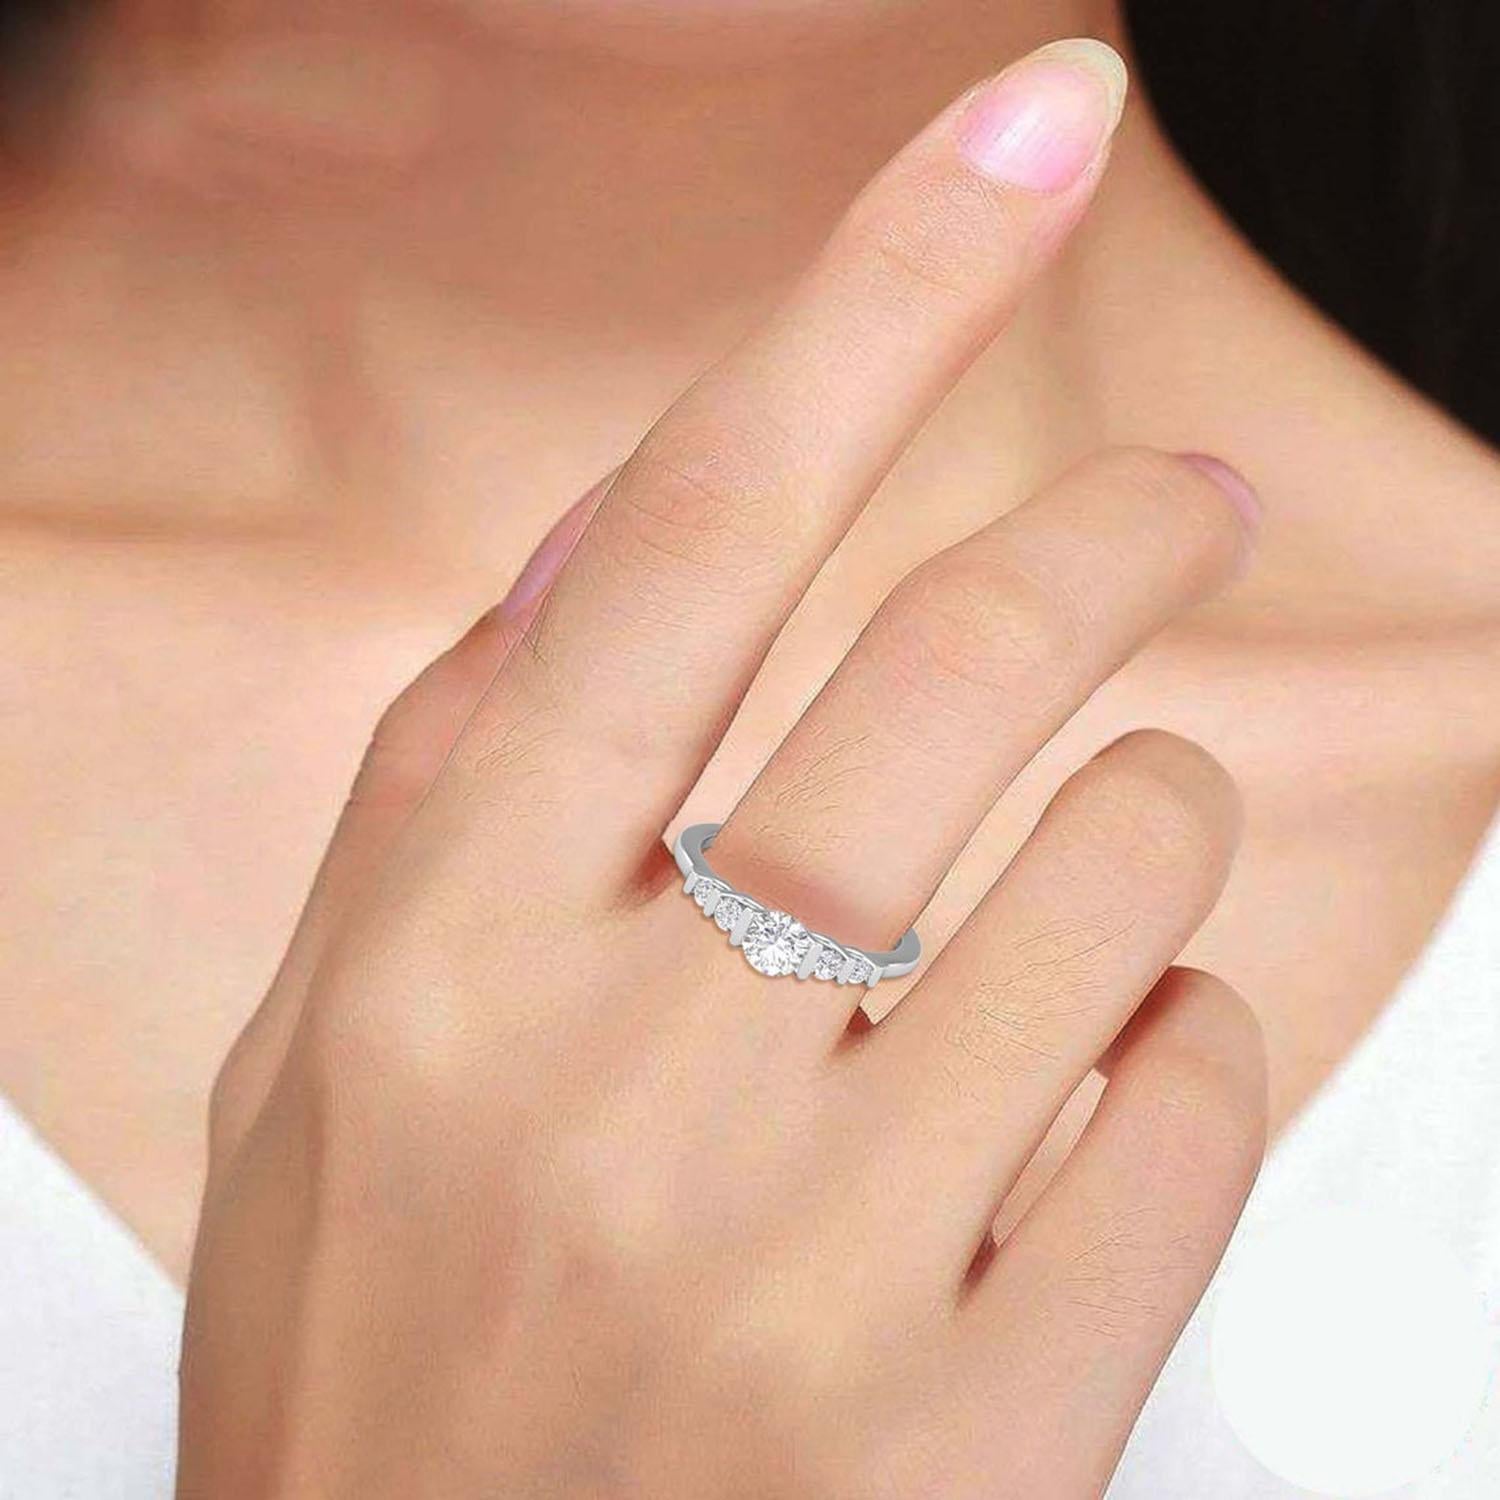 Women's 14 K Gold Moissanite Ring / Moissanite Solitaire Ring / Engagement Ring for Her For Sale